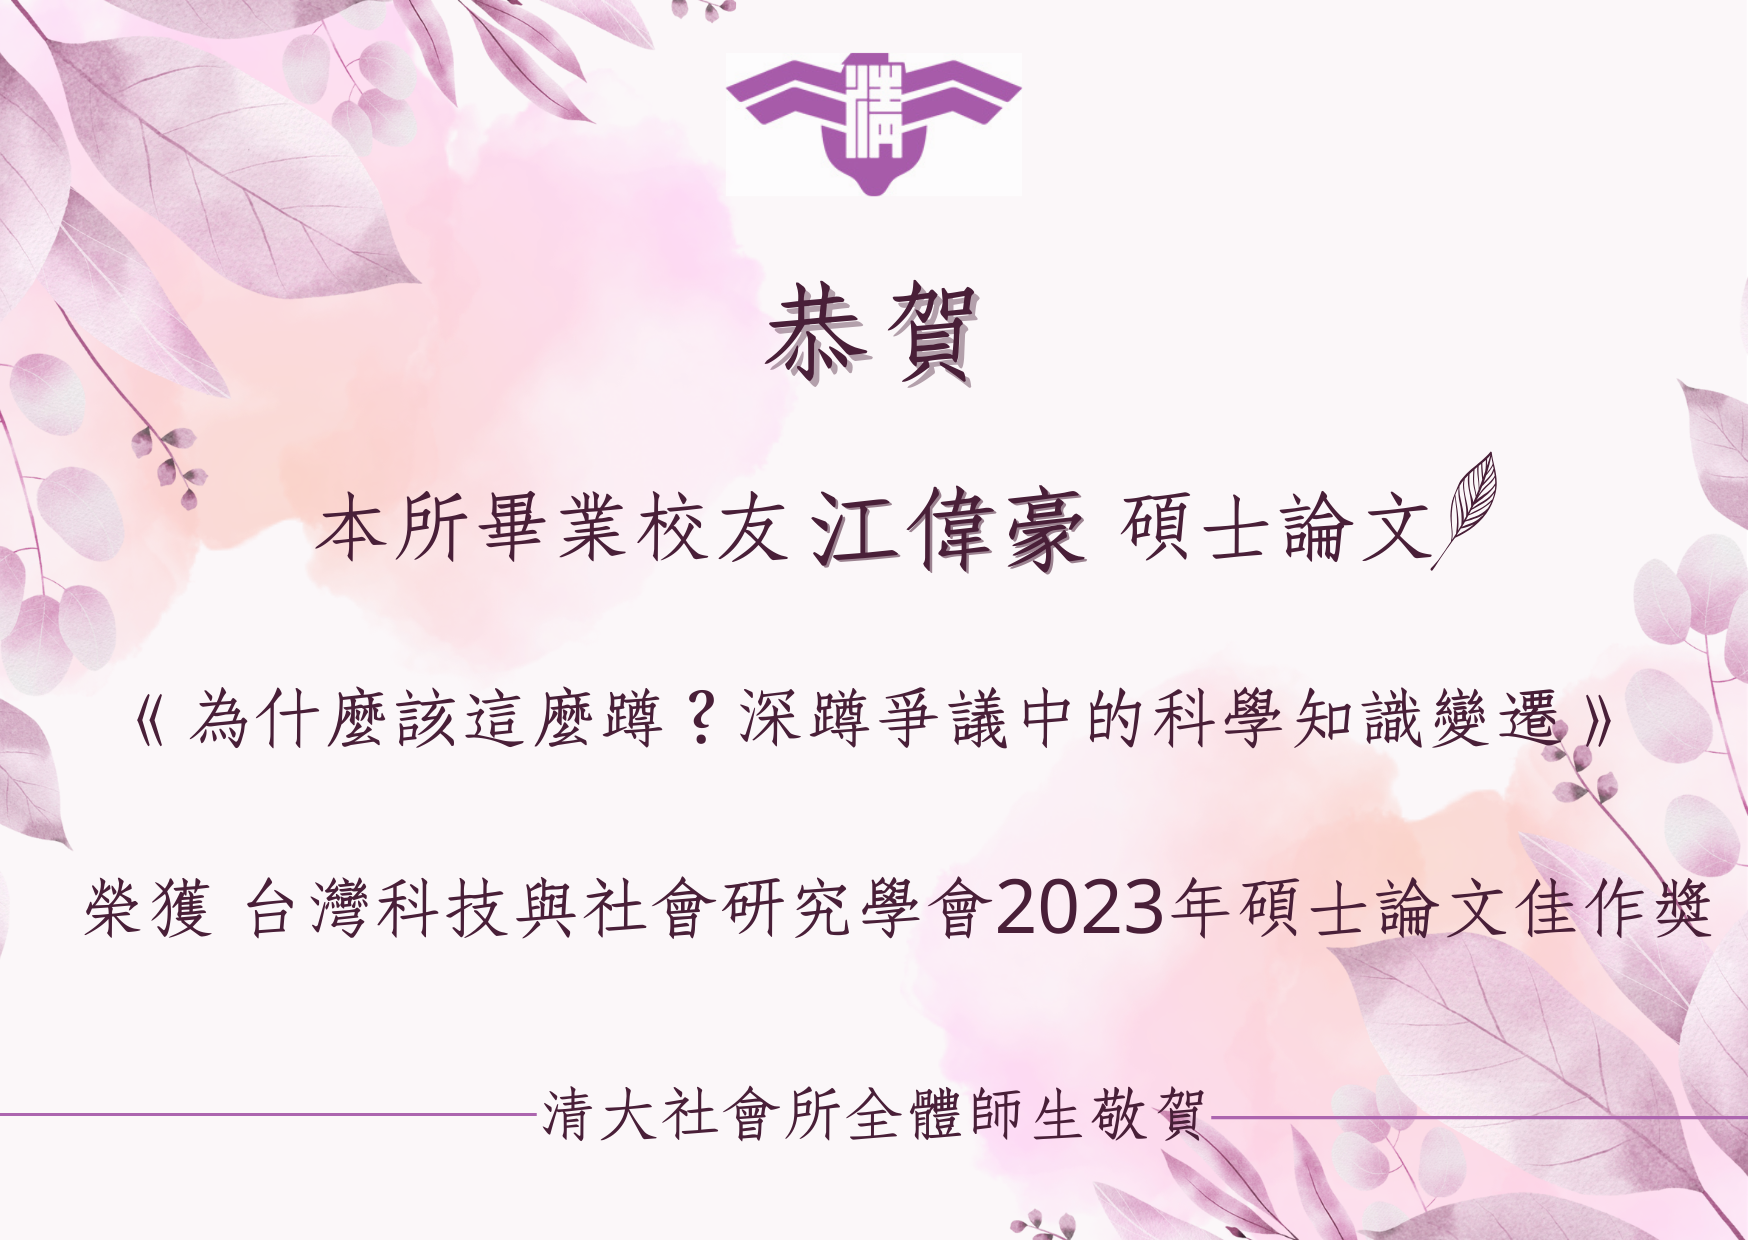 【賀】本所碩士生江偉豪榮獲台灣科技與社會研究學會2023年碩士論文佳作獎